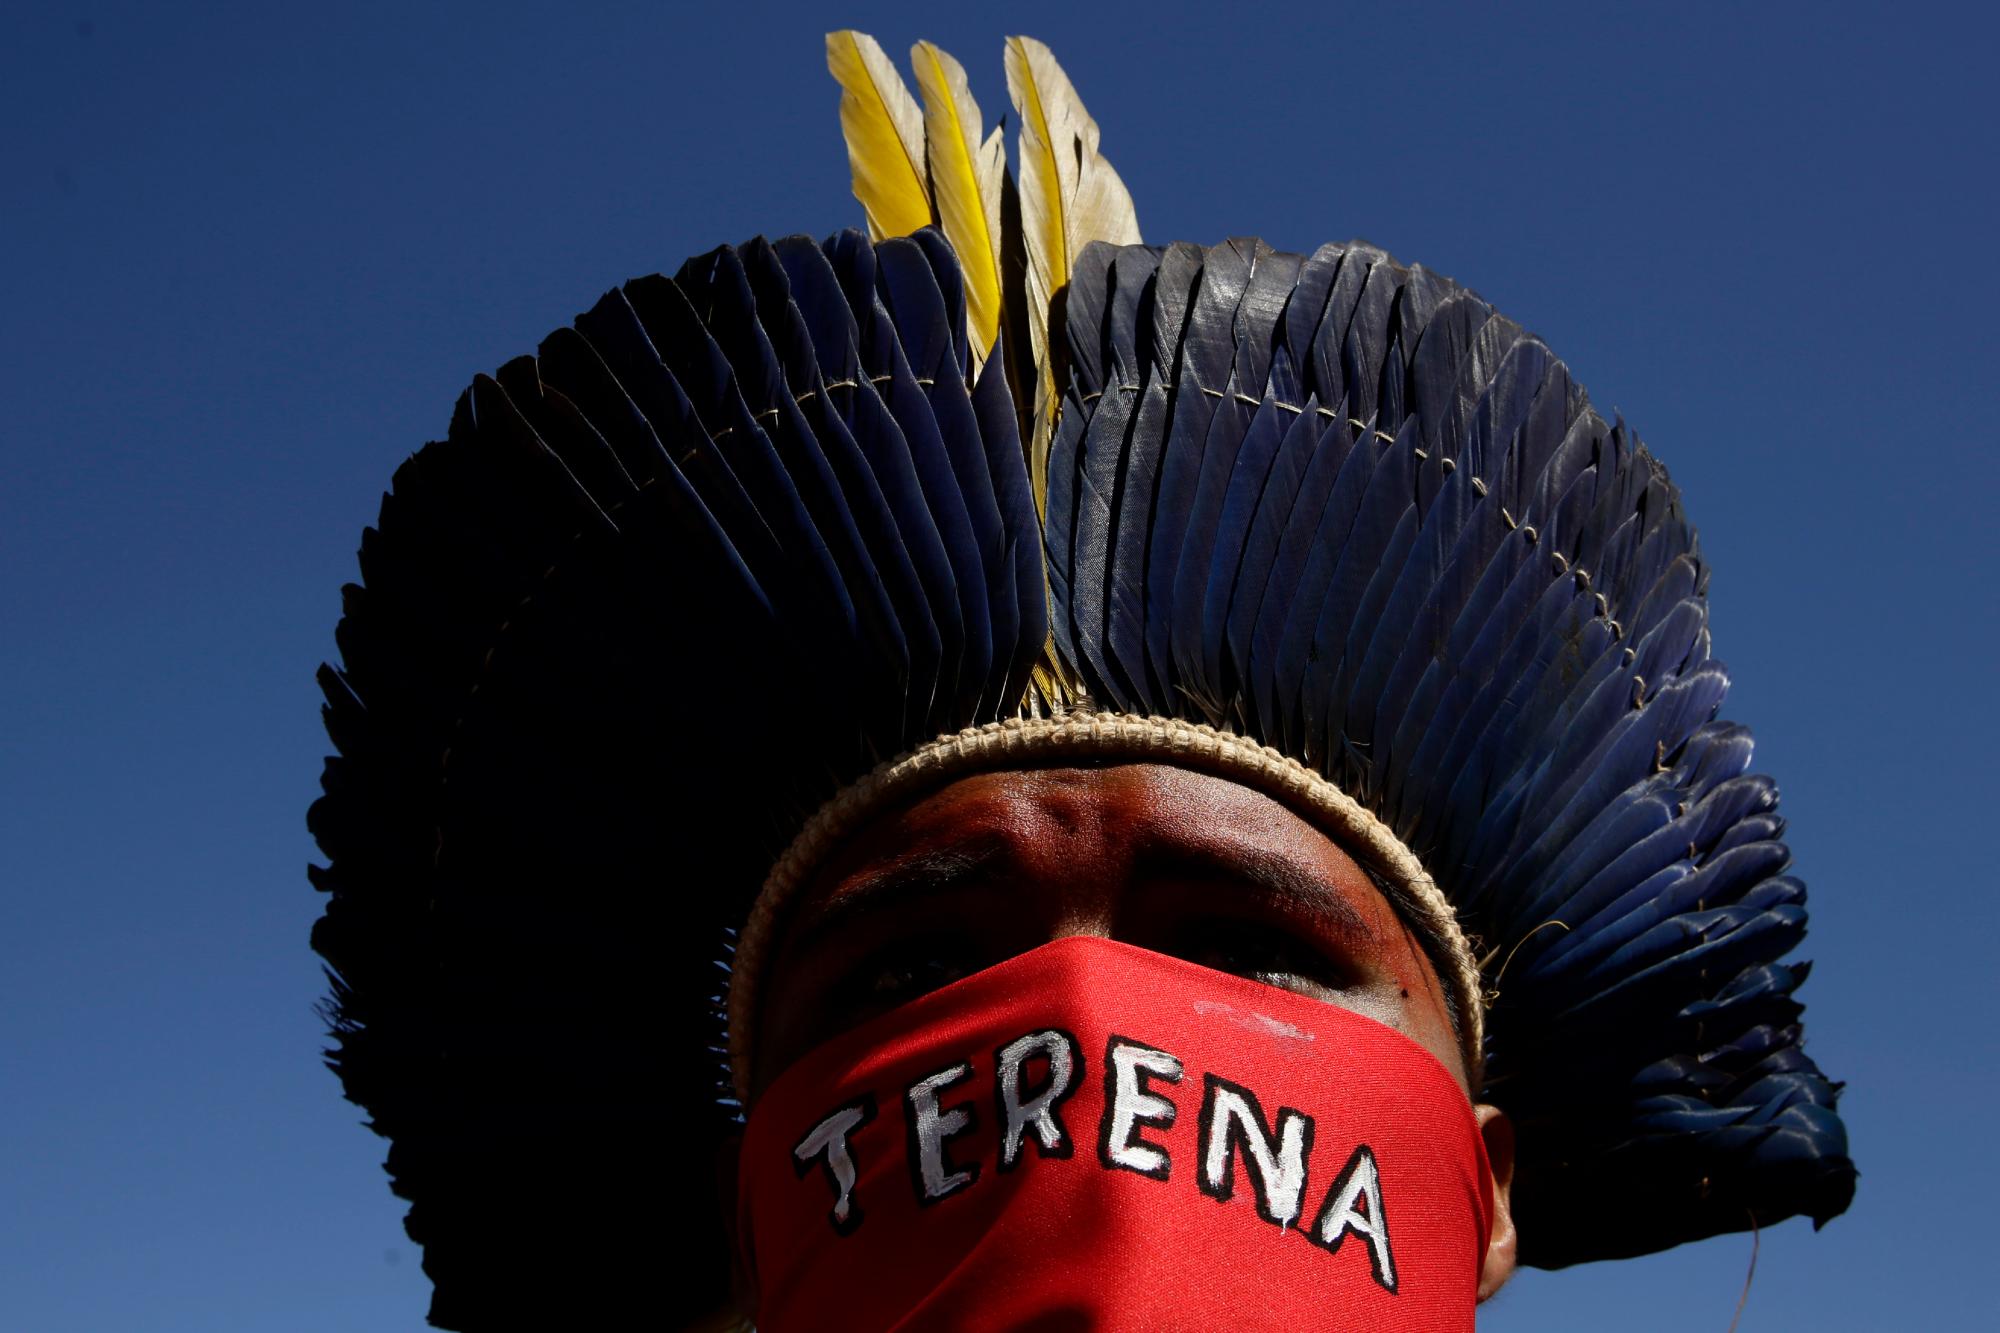 Un joven guerrero indígena se cubre la cara con un paño que tiene el nombre de su pueblo, Terena, escrito durante una Marcha de Mujeres Indígenas, en Brasilia, Brasil, el martes 13 de agosto de 2019. Cientos de mujeres indígenas llegaron a la capital para protestar por las políticas del presidente Jair Bolsonaro. 